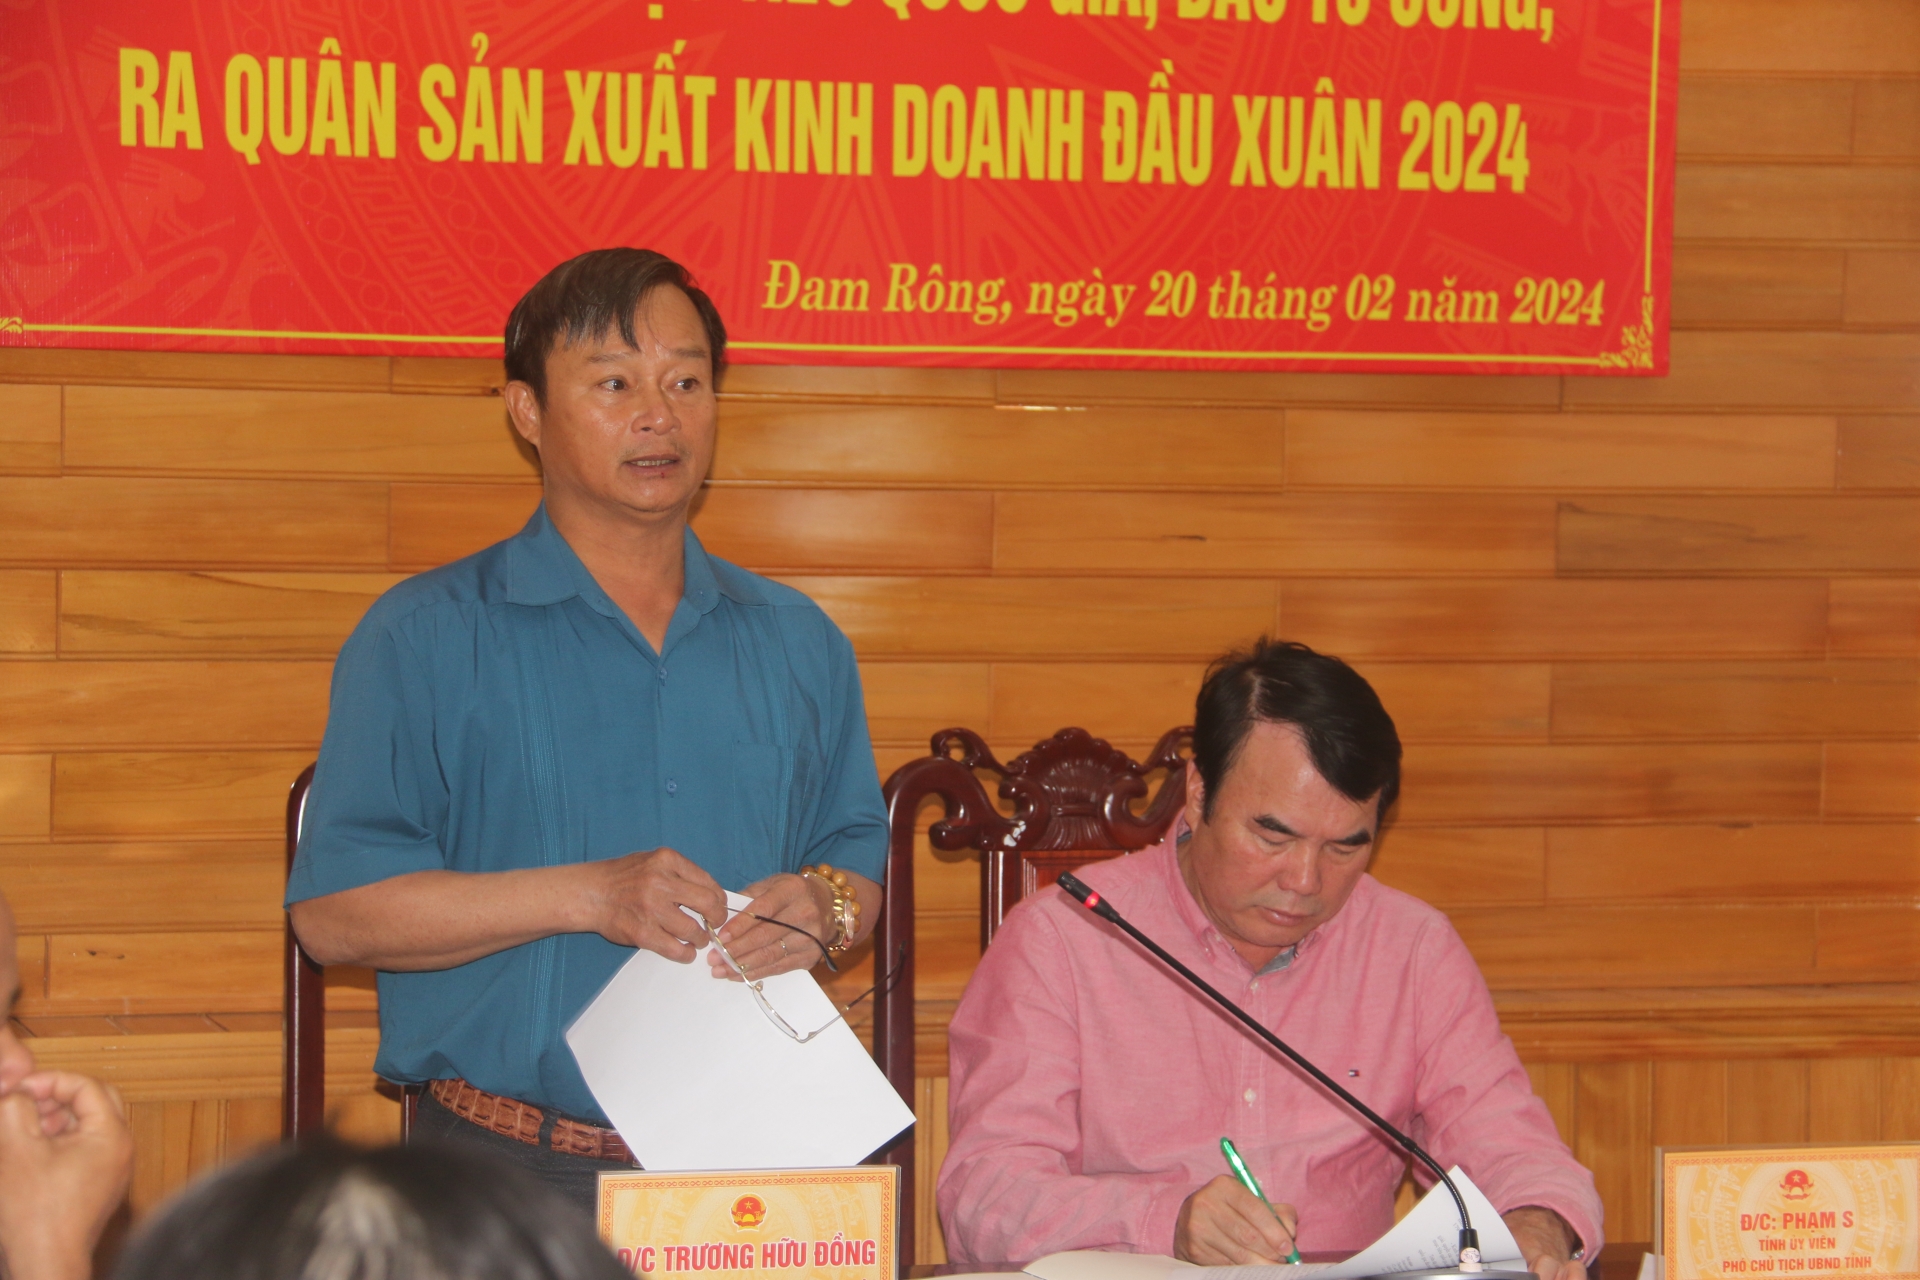 Đồng chí Trương Hữu Đồng – Chủ tịch UBND huyện báo cáo tại buổi làm việc

